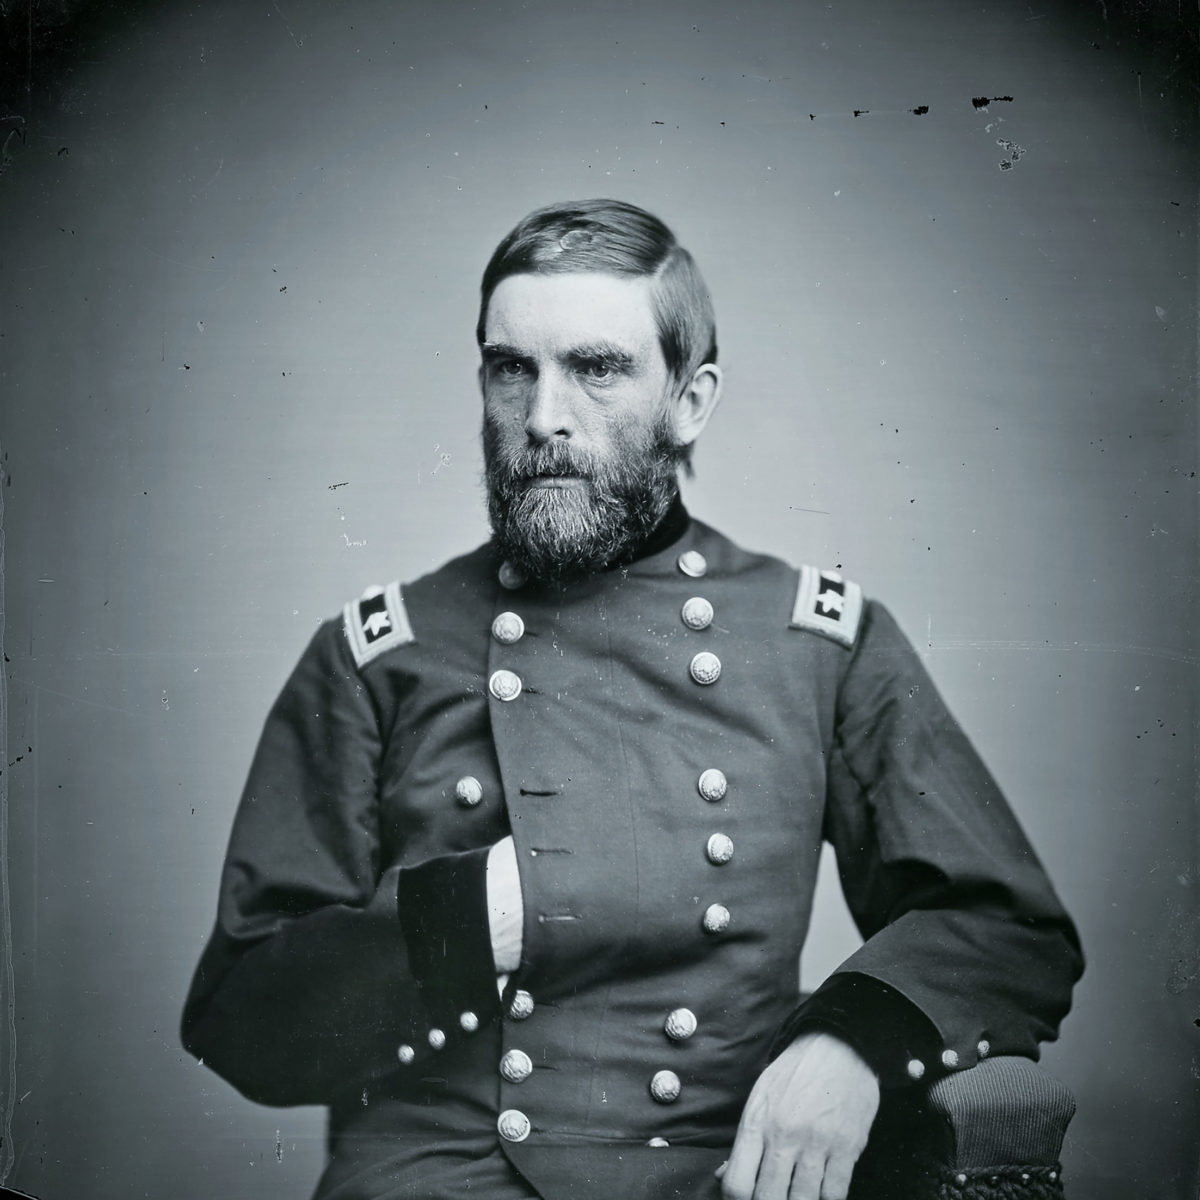 Major General Grenville Dodge